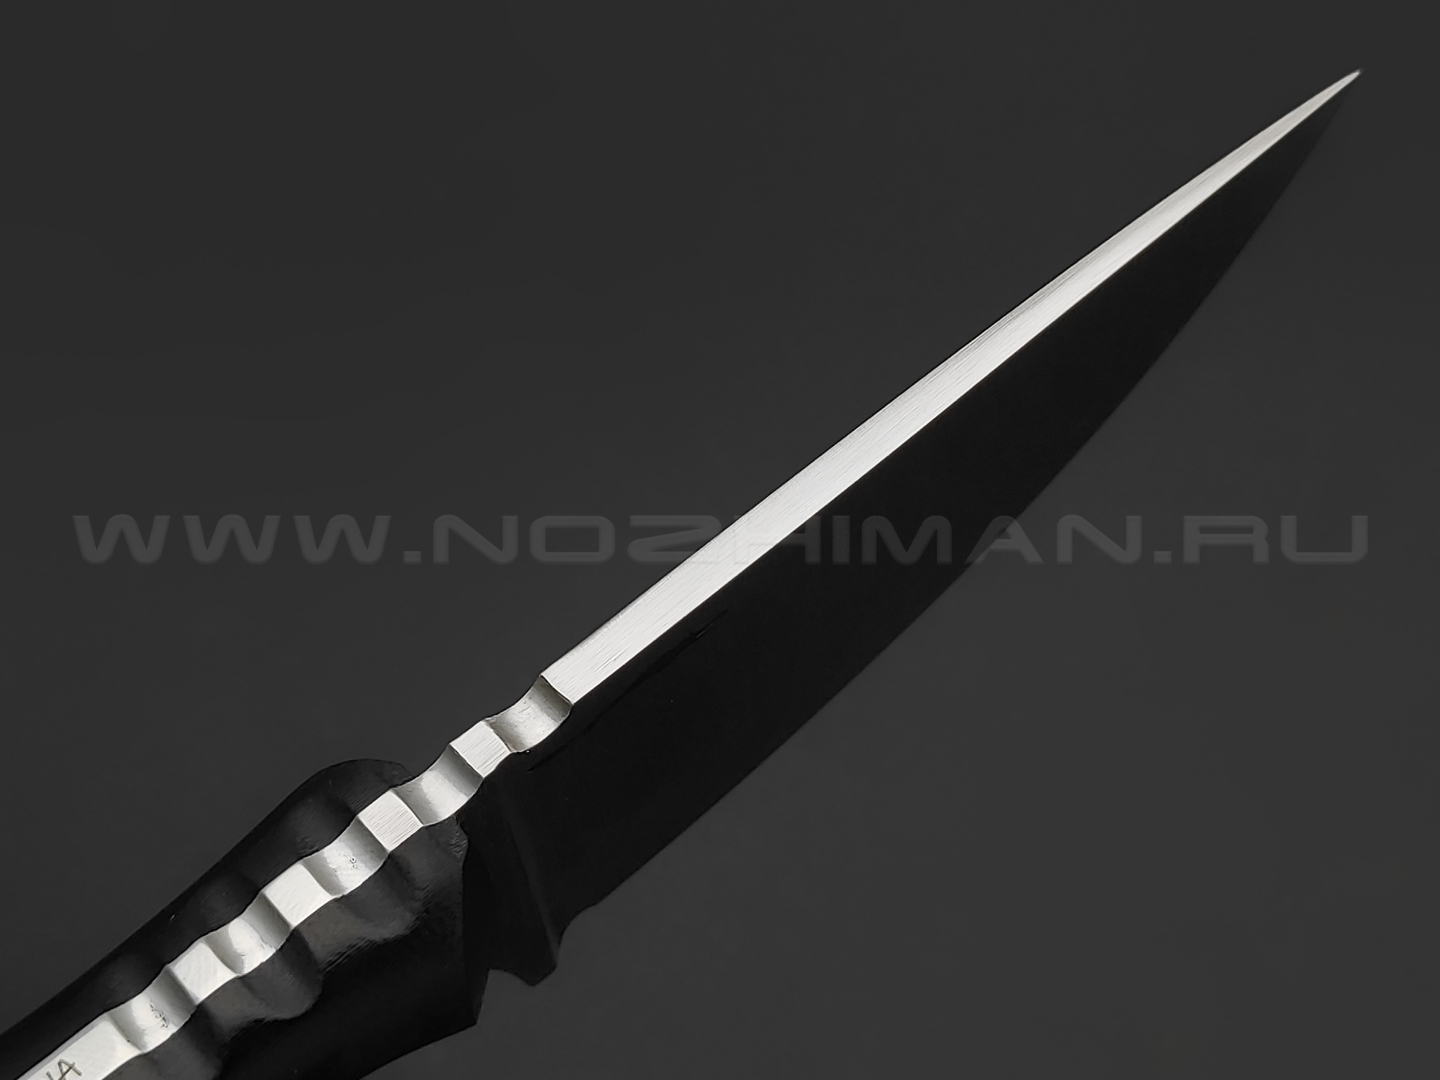 Волчий Век нож МасичЬка Custom Mod. сталь N690 WA satin, рукоять G10 black